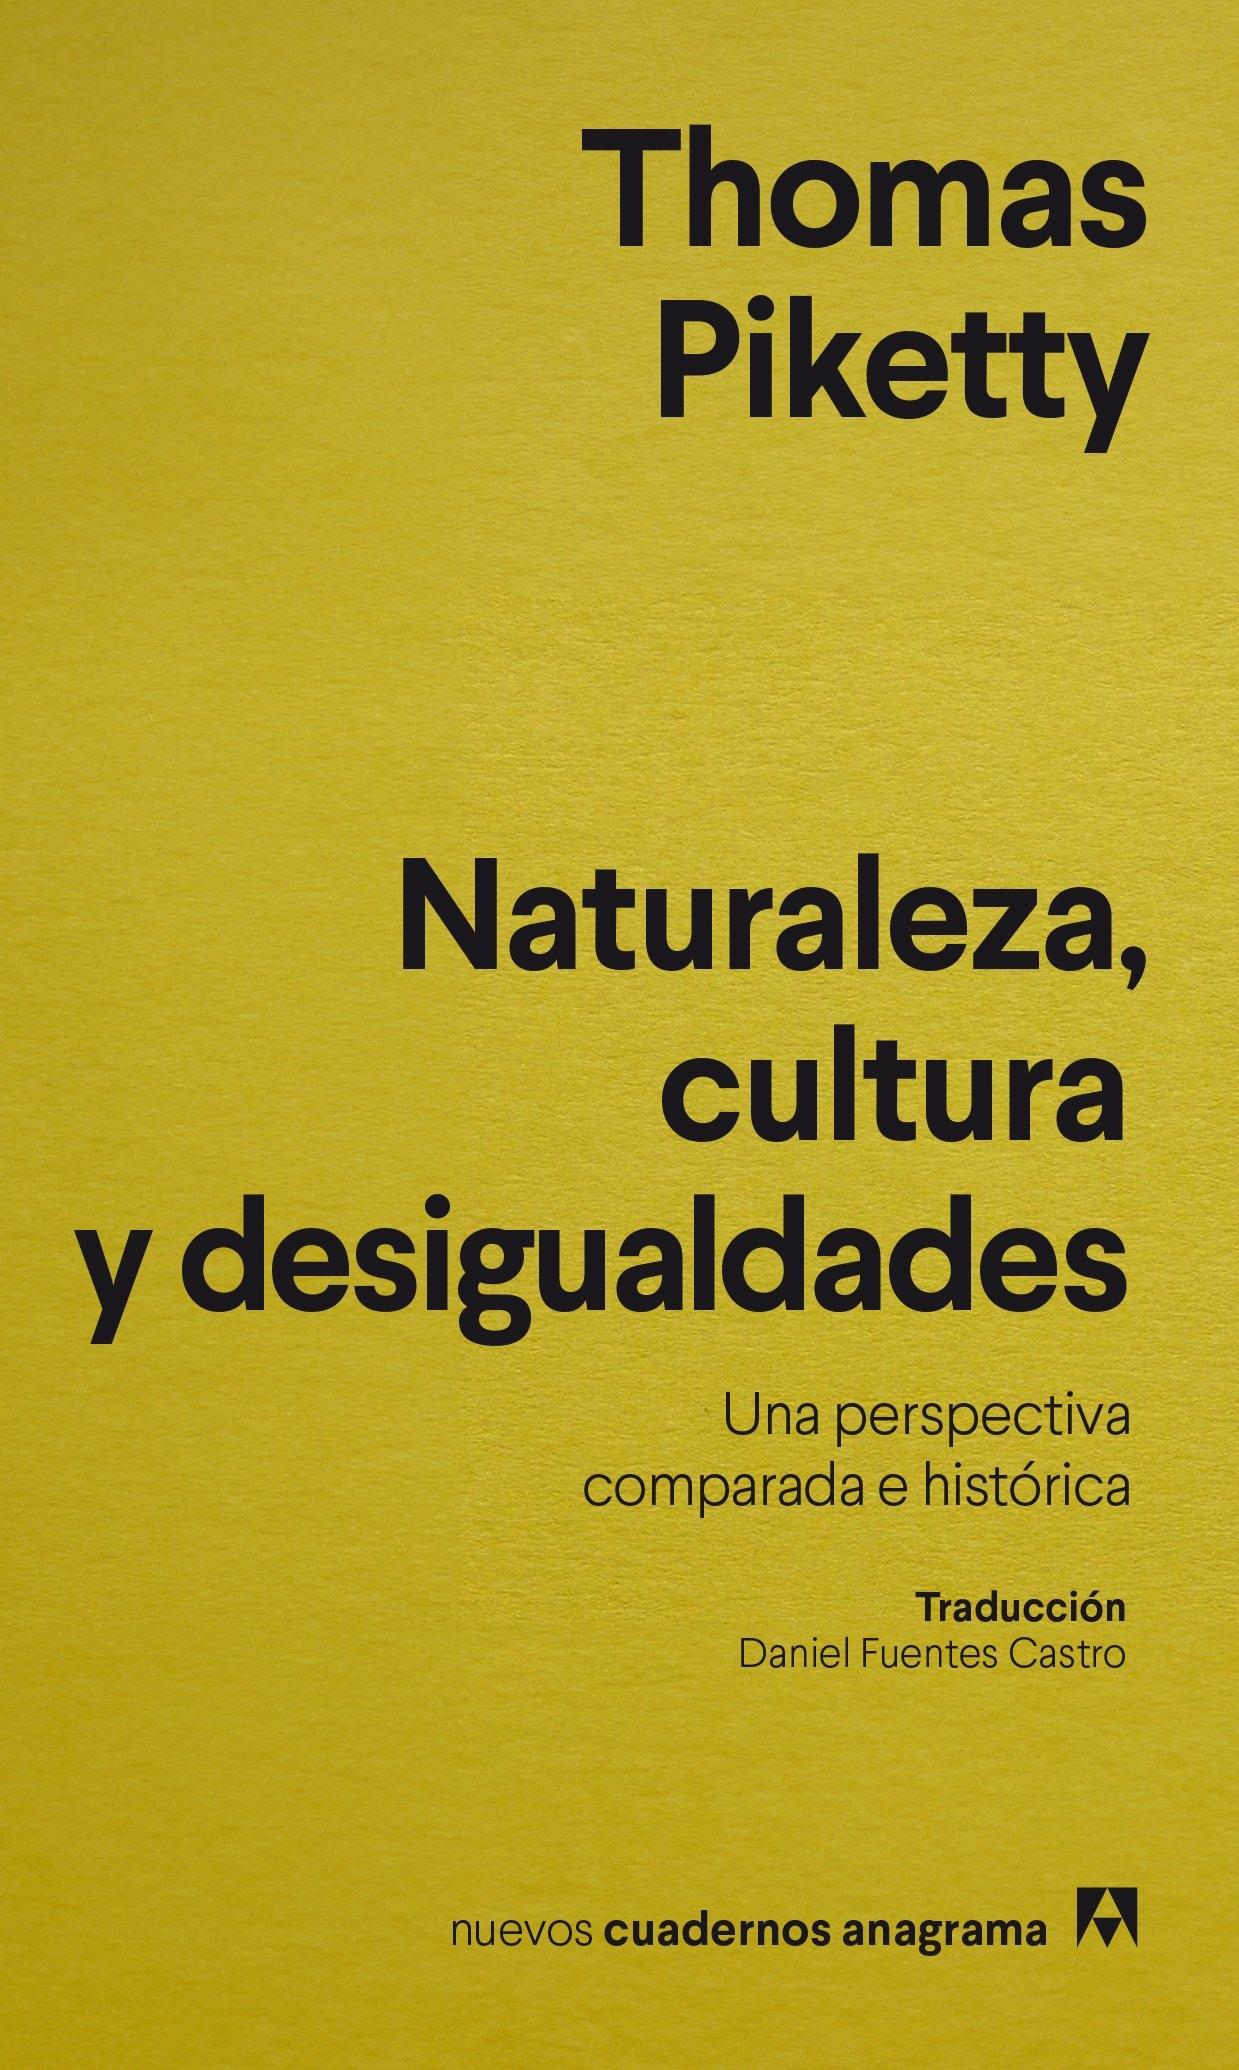 Naturaleza, Cultura y Desigualdades "Una Perspectiva Comparada e Histórica "